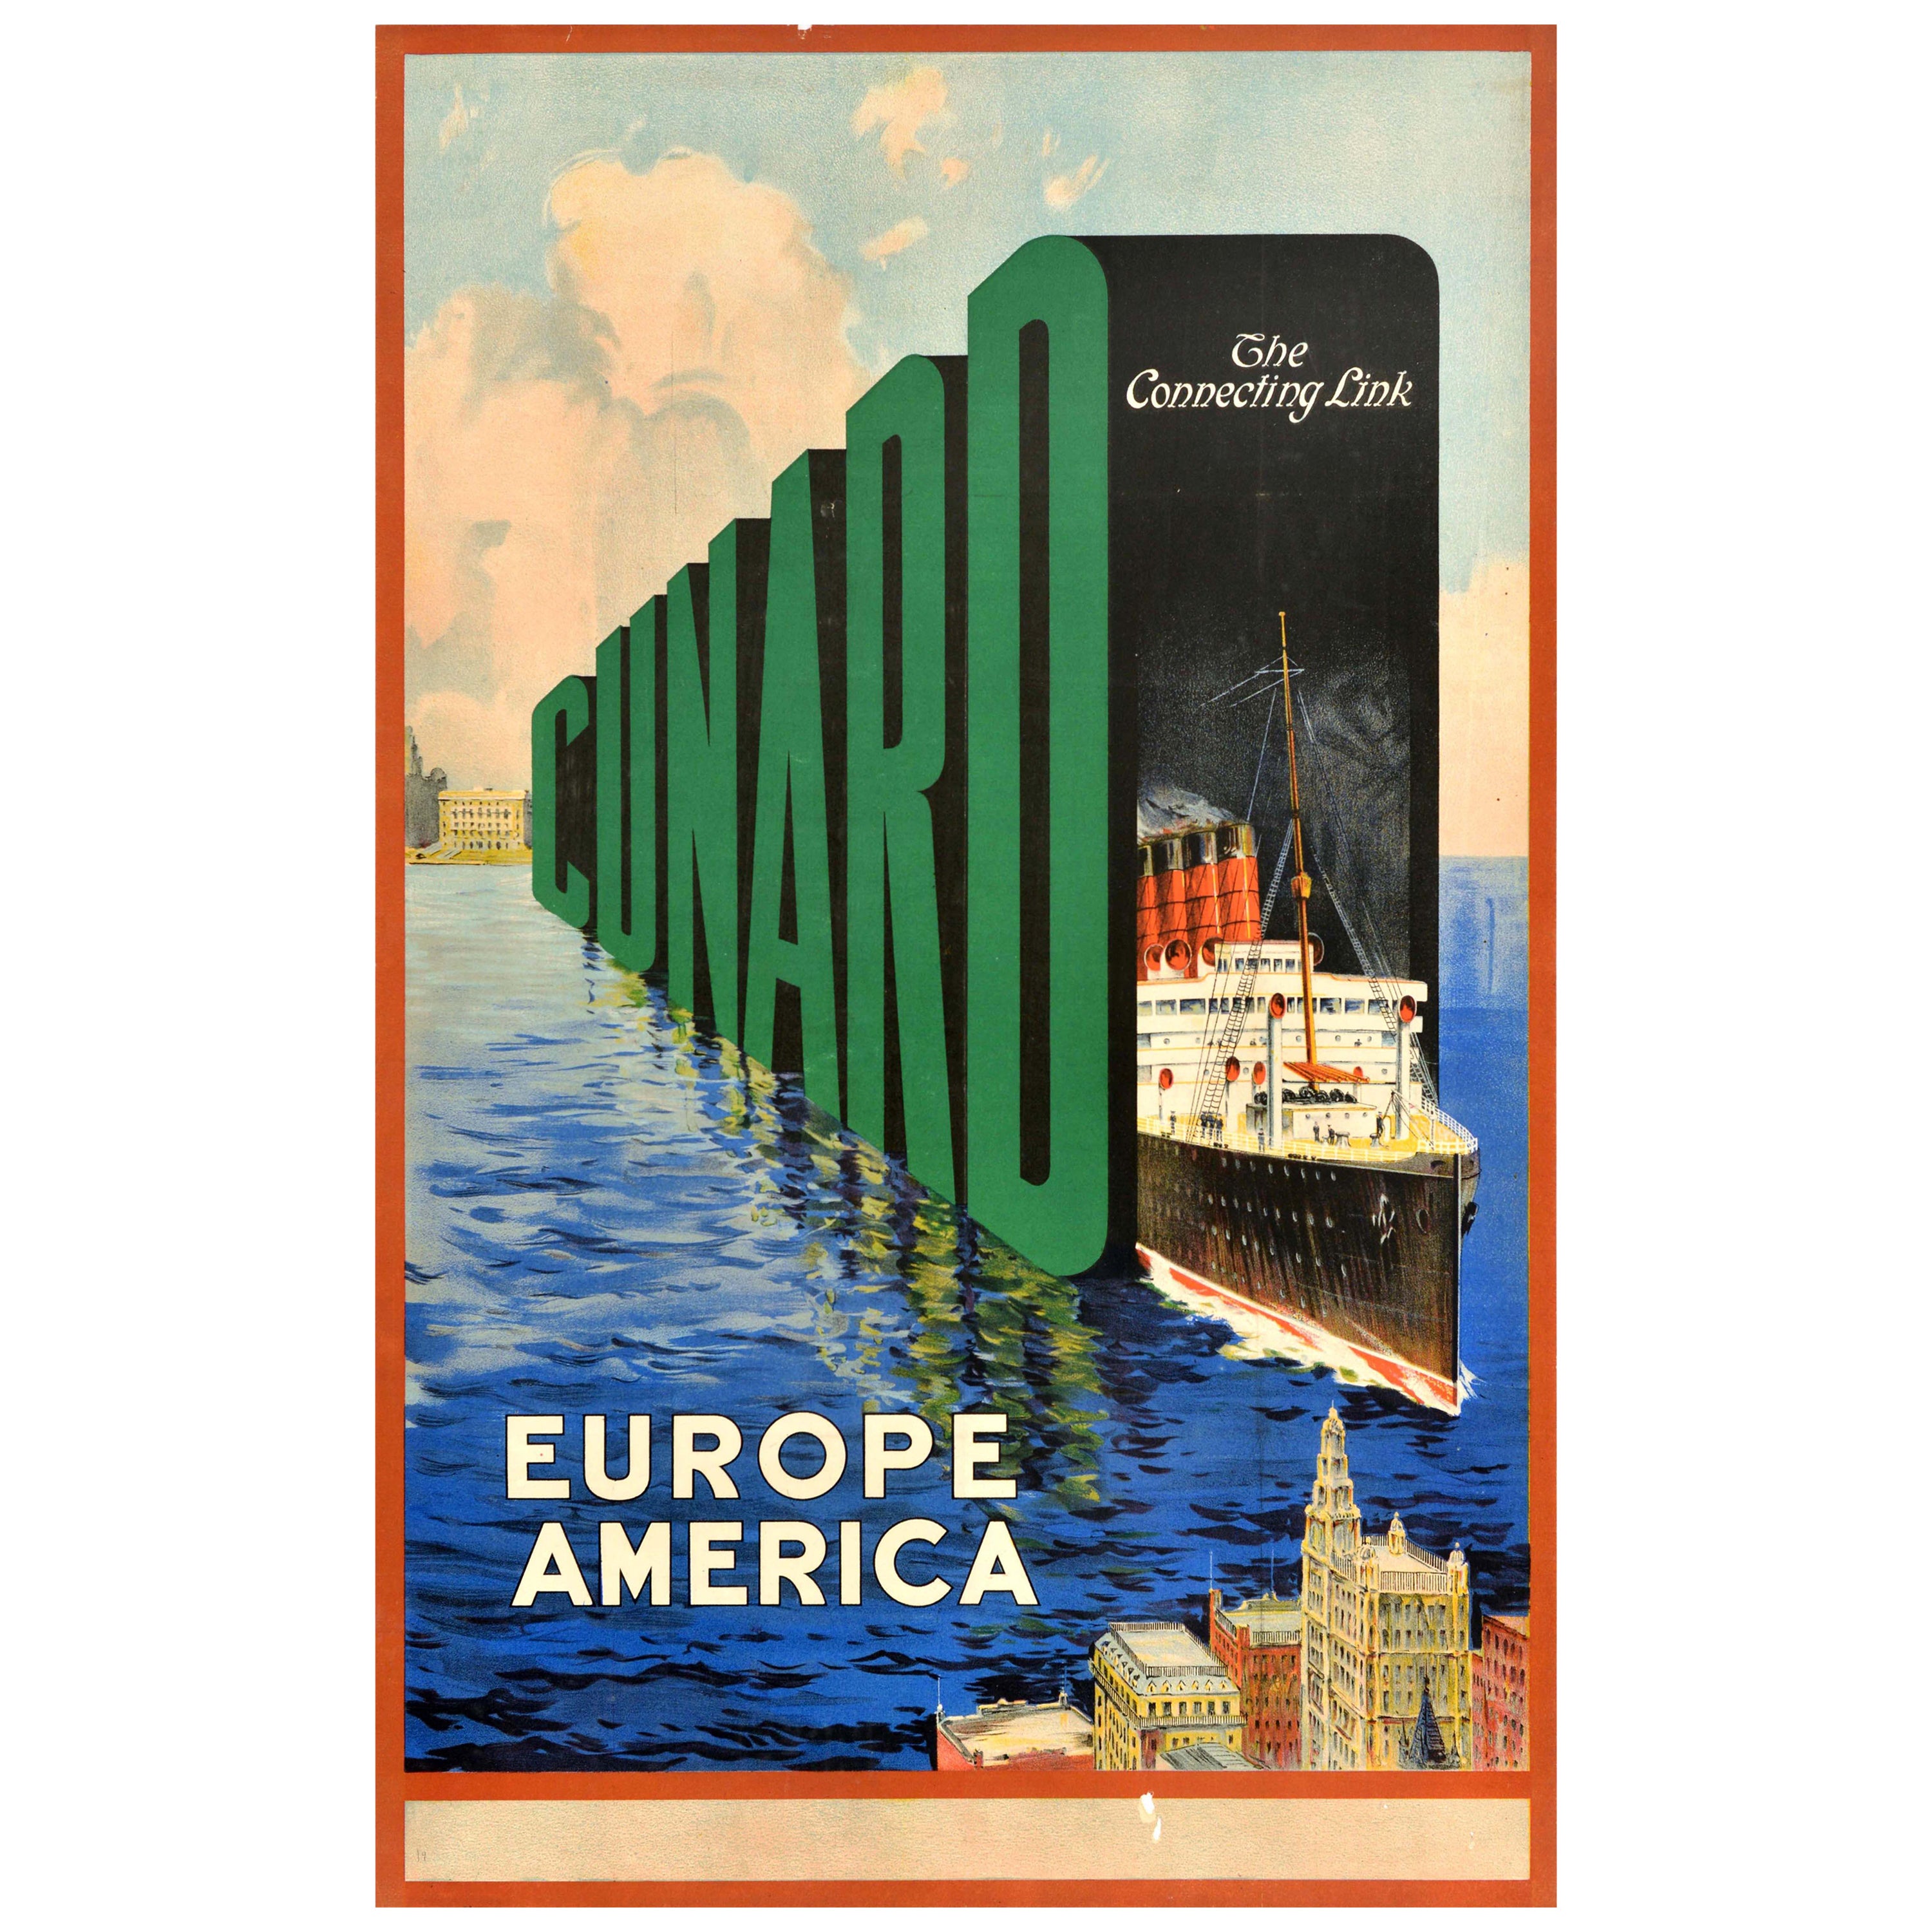 Affiche vintage originale de voyage de croisière Cunard The Connecting Link Europe Amérique